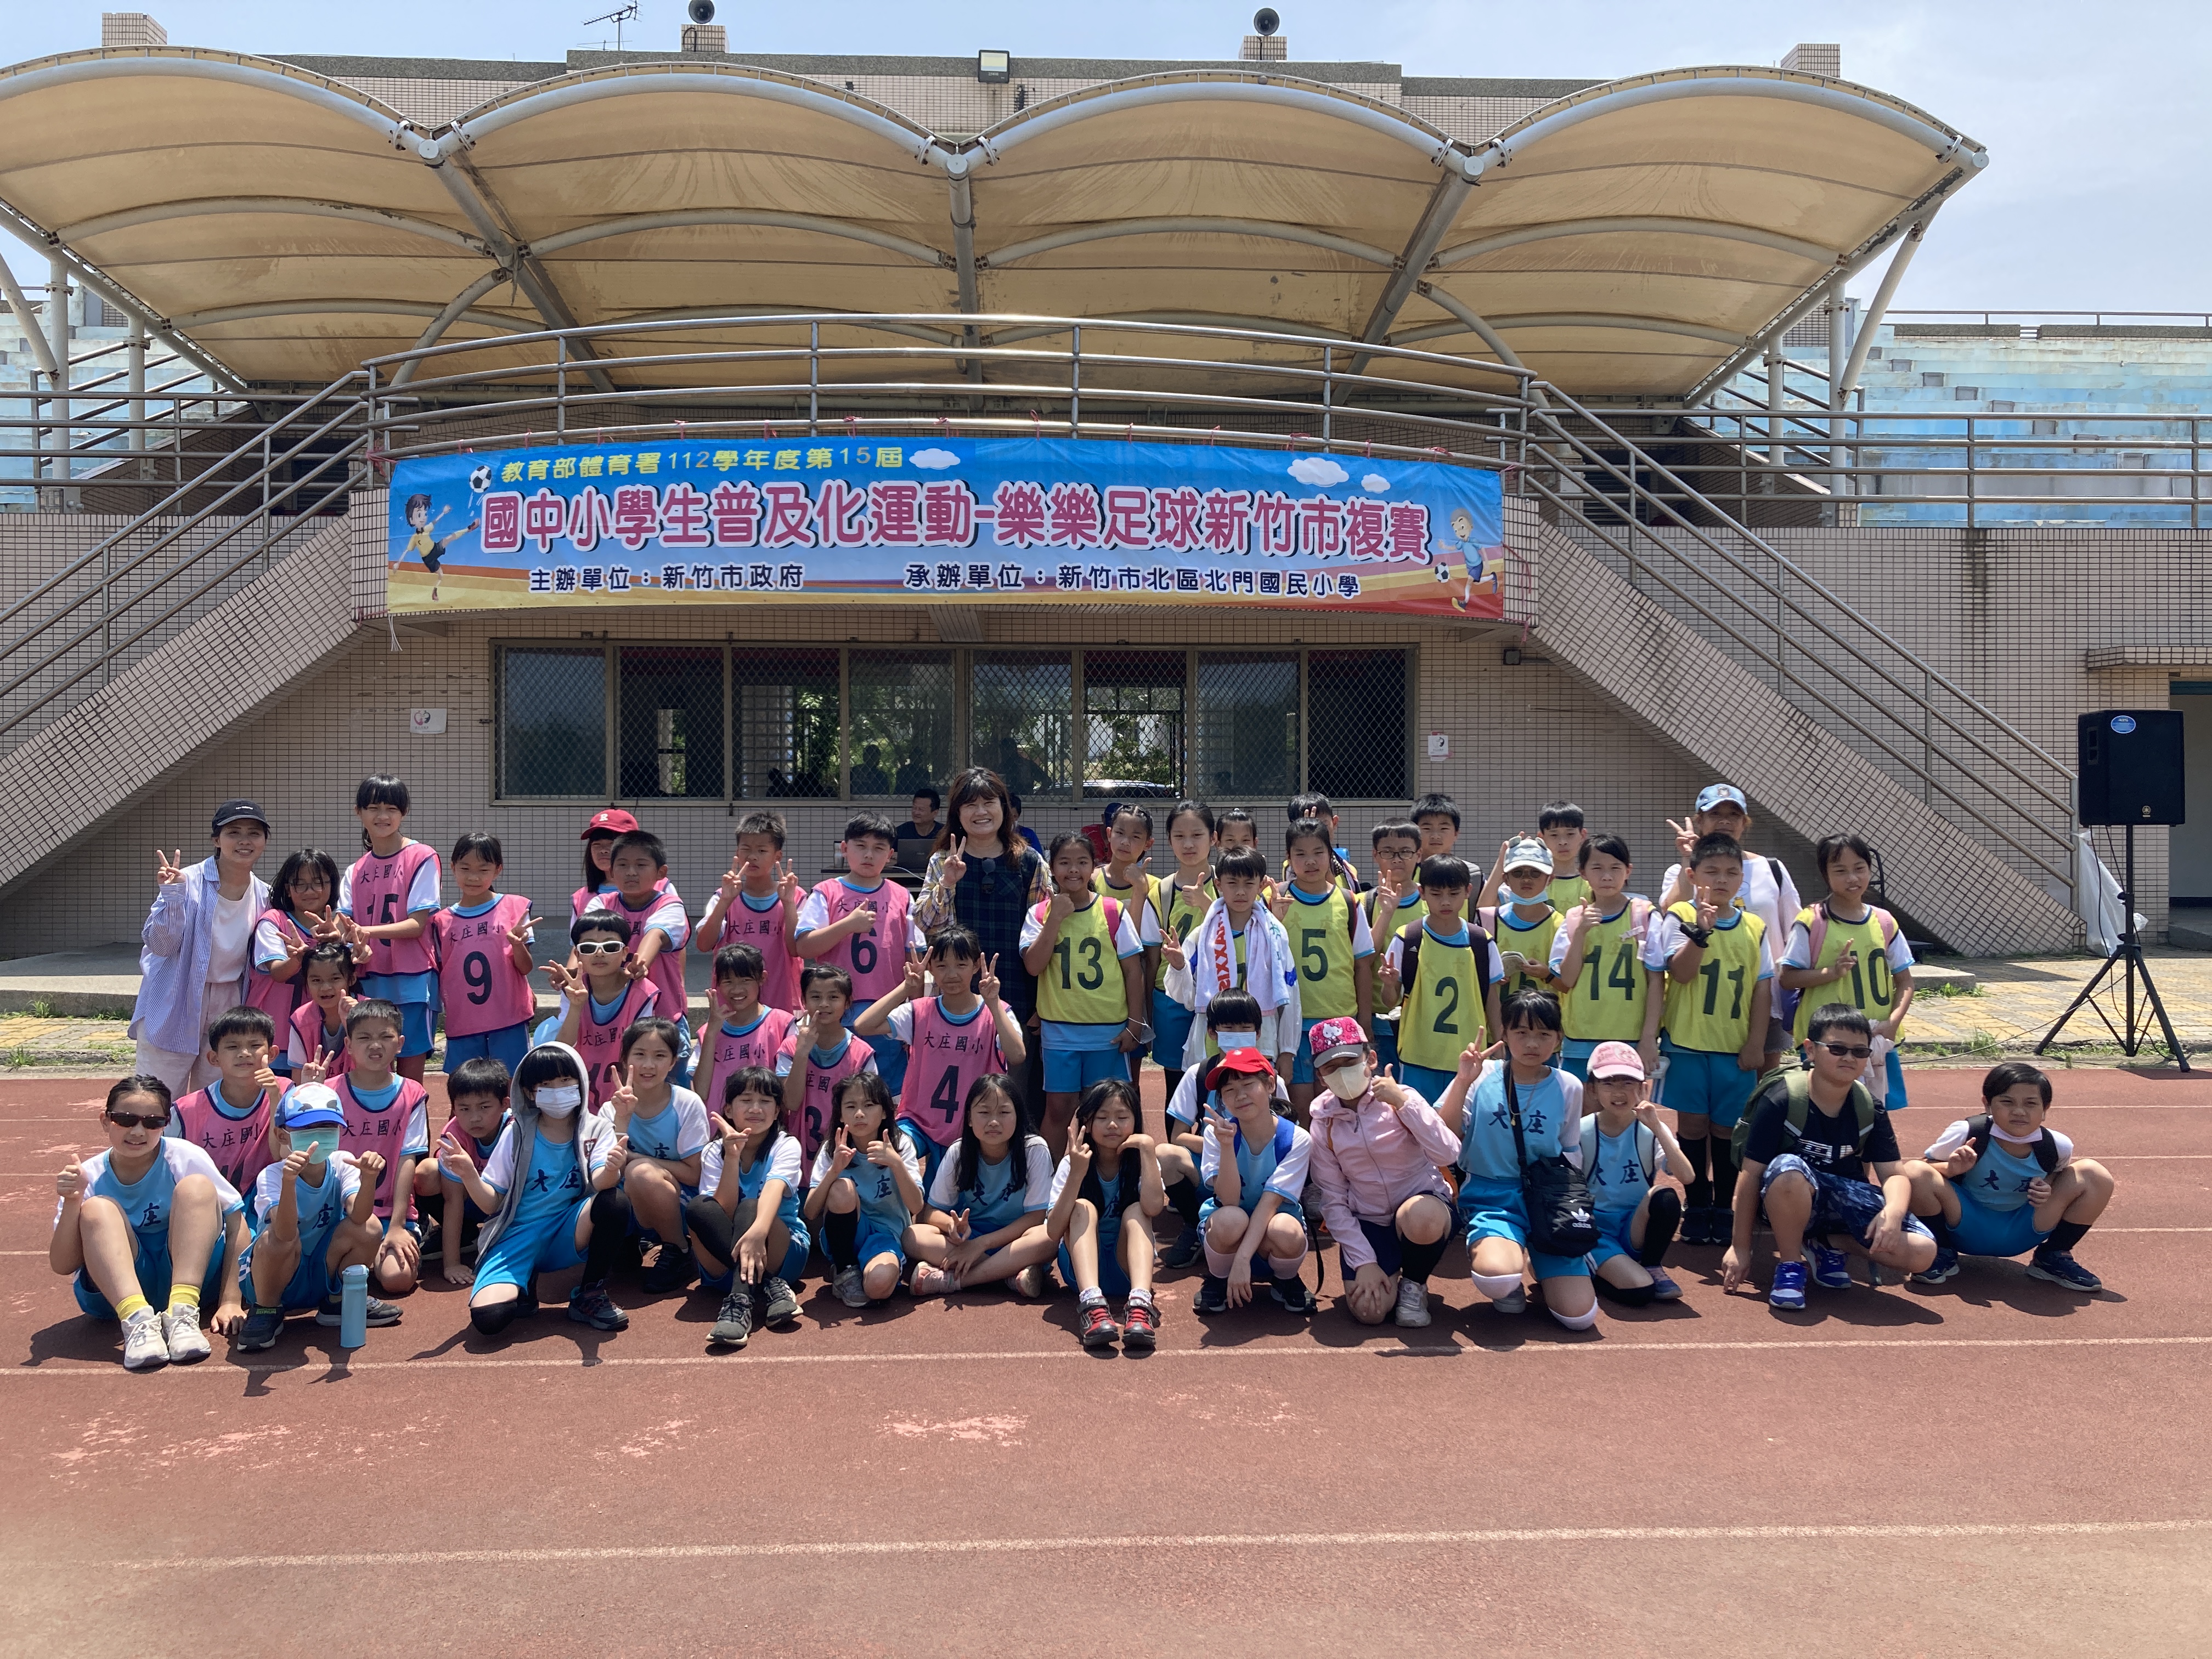 大庄國小學生熱情參加新竹市樂樂足球賽，凝聚班級向心力活動照片